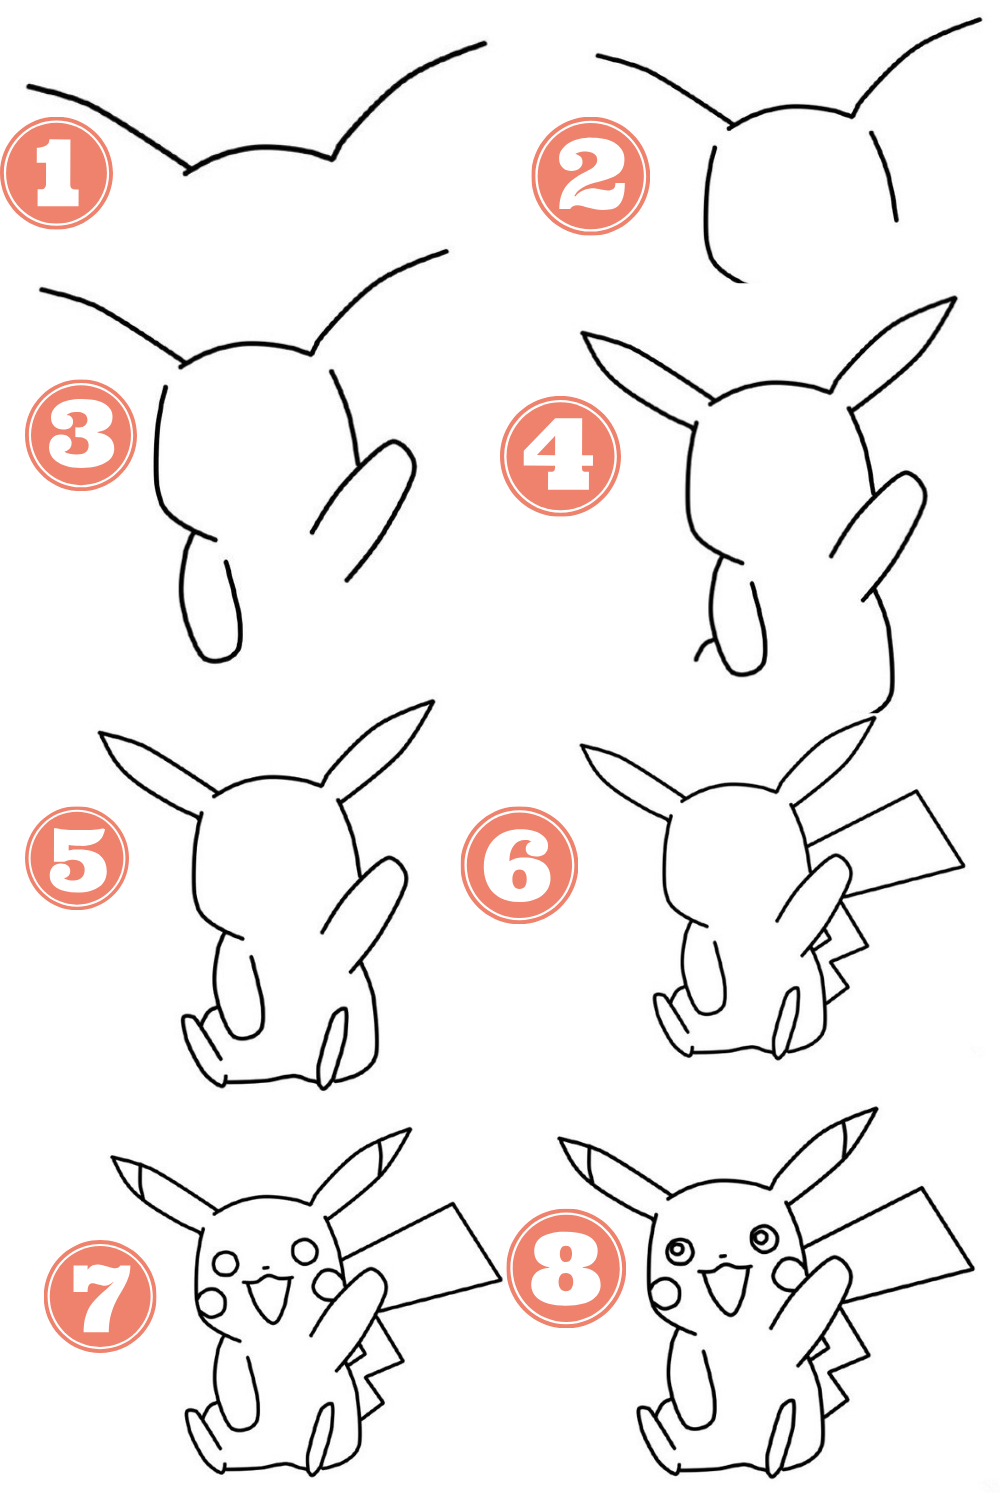 Como Desenhar o Pikachu Em Menos De 3 Minutos Passo a Passo